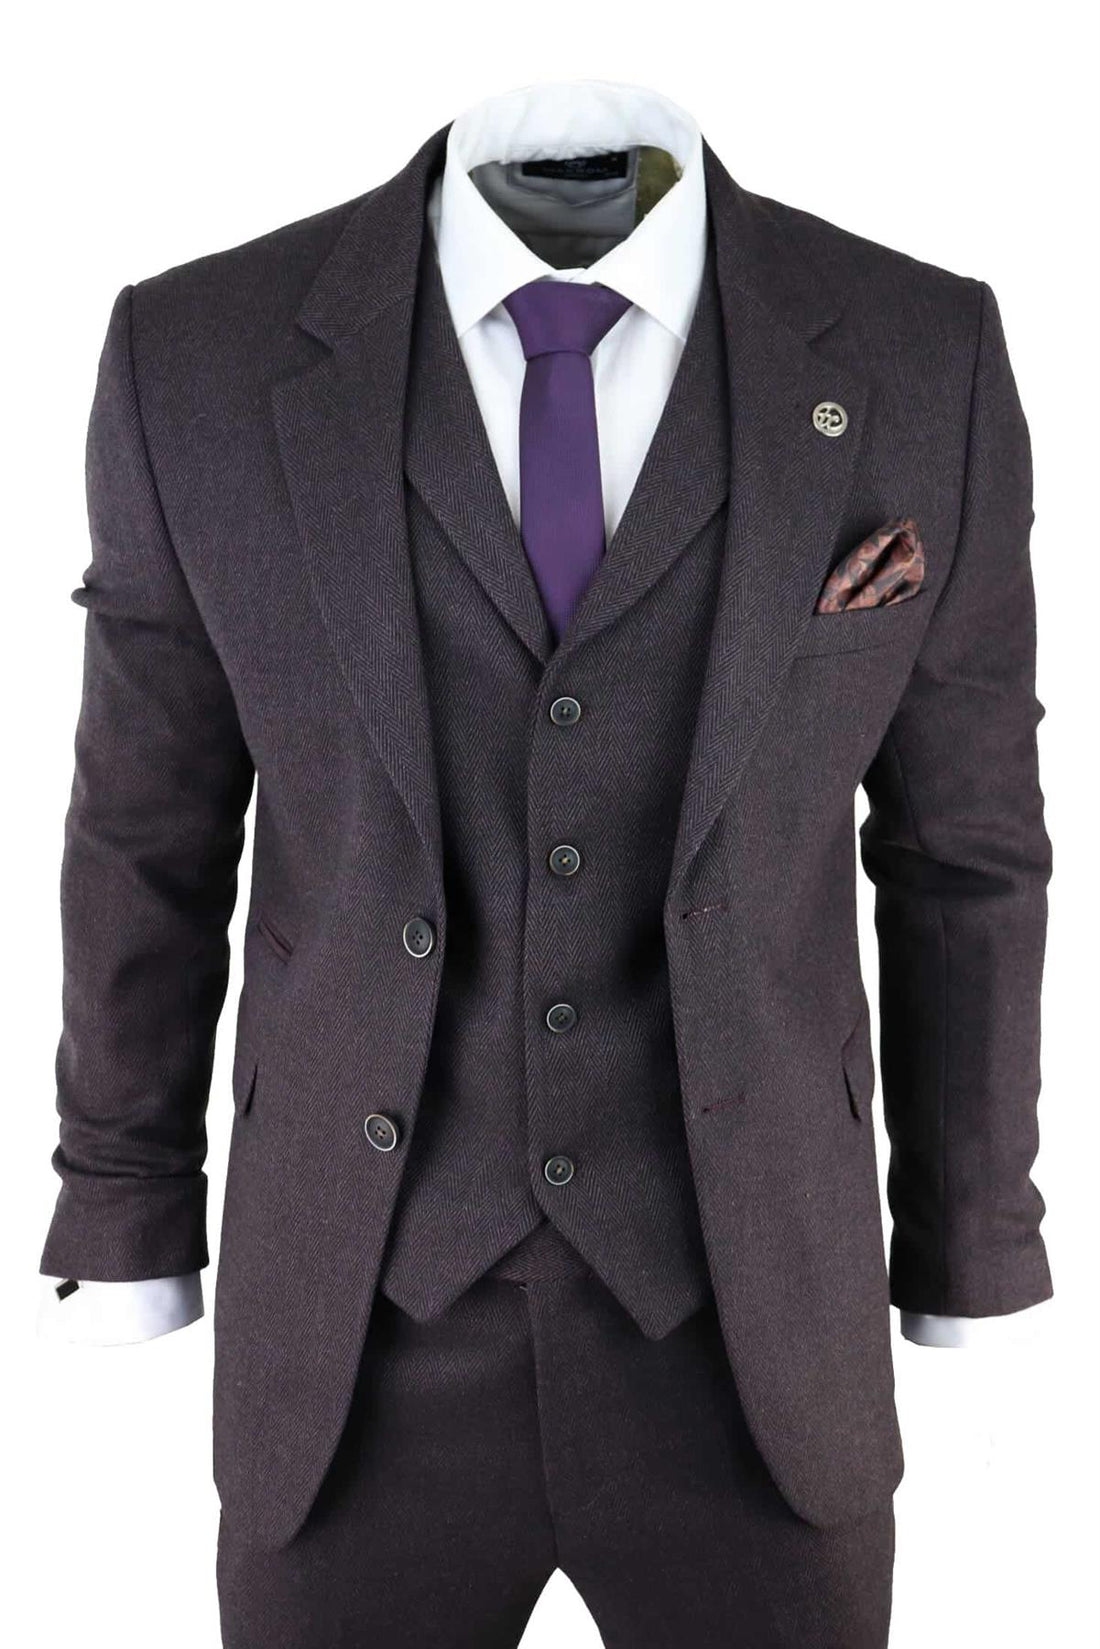 Mens Purple Plum 3 Piece Tweed Herringbone Suit Peaky Blinders Classic Tailored